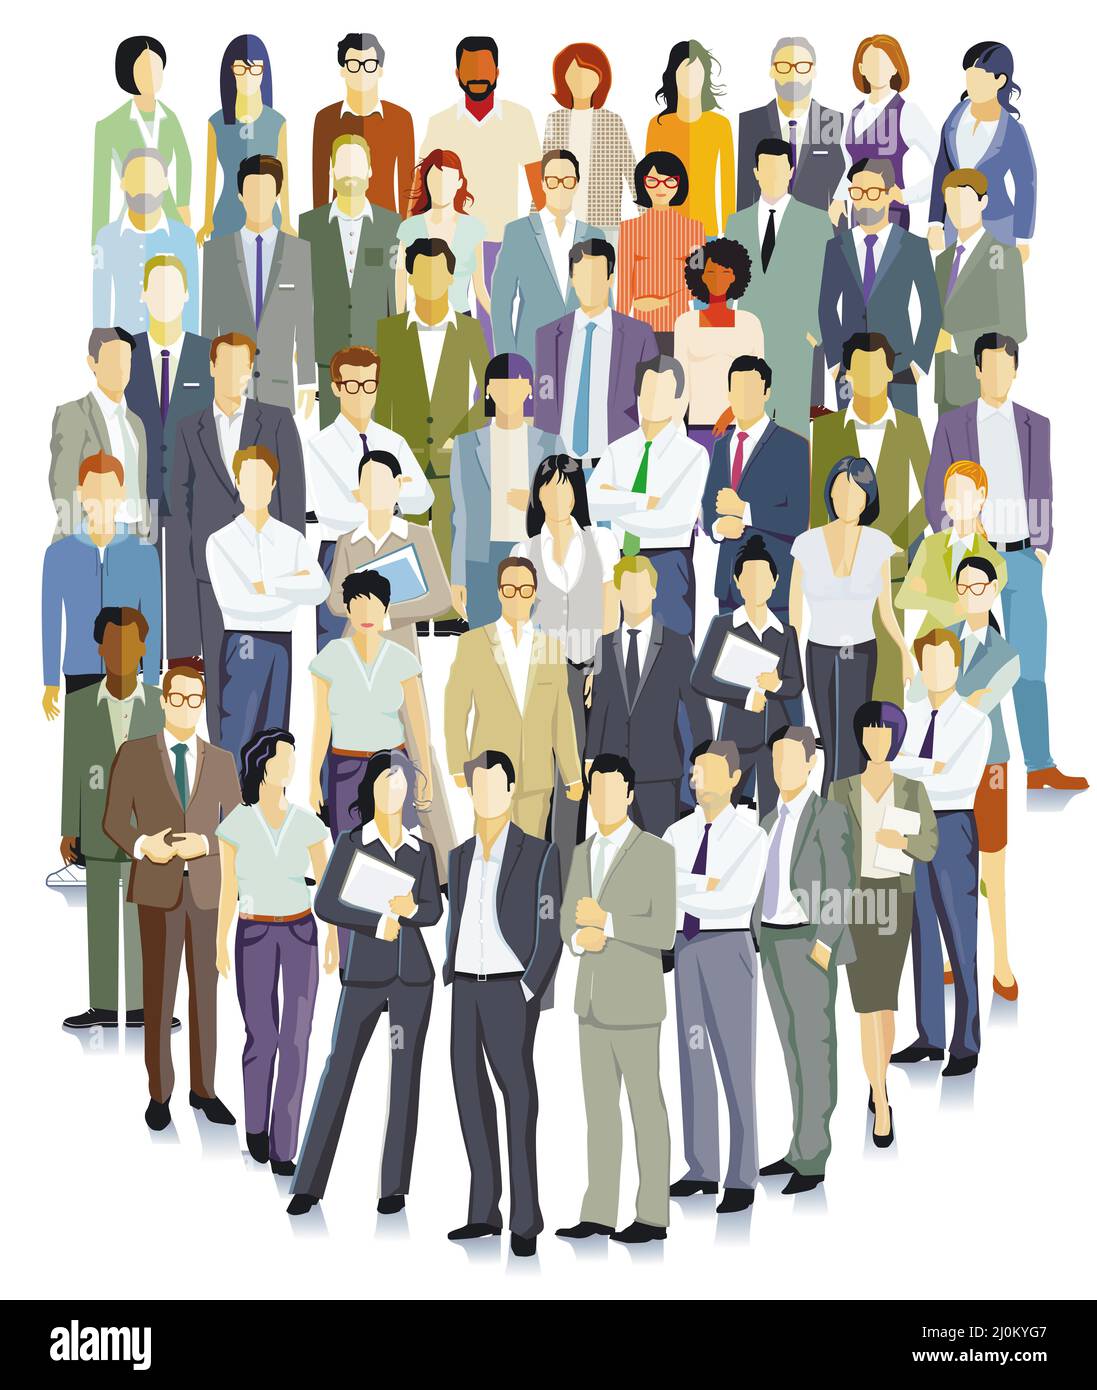 Ilustración de personas de negocios, aisladas sobre fondo blanco Foto de stock